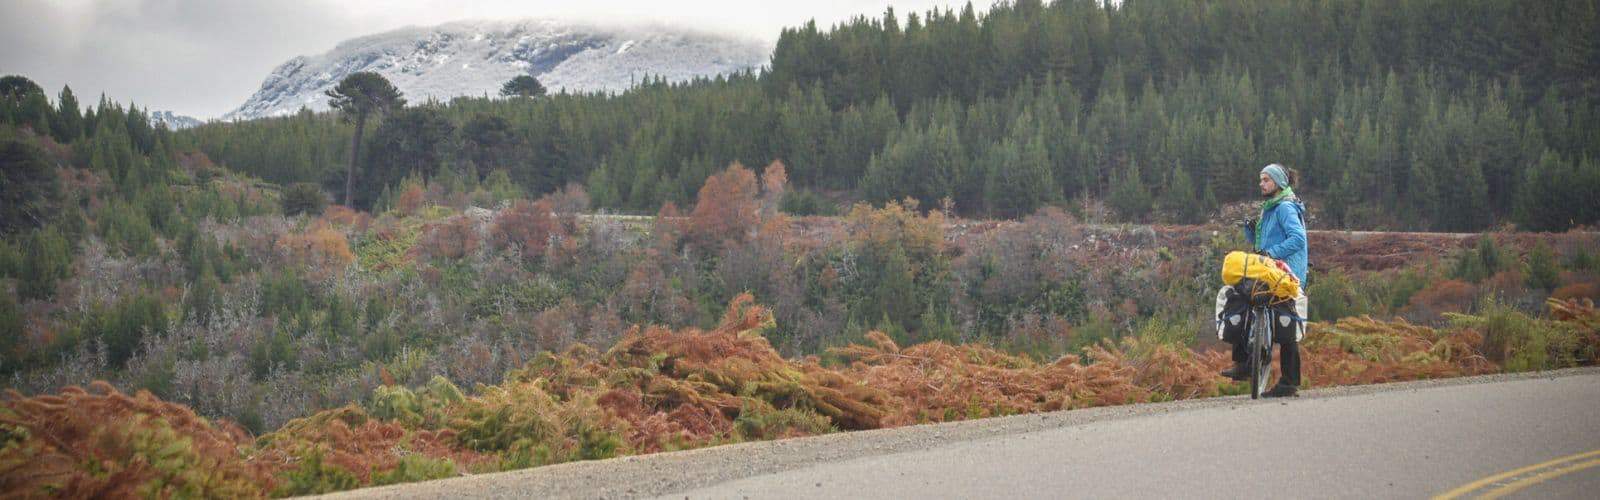 Una persona en bicicleta disfrutando de una emocionante aventura de cicloturismo por una impresionante carretera de montaña.